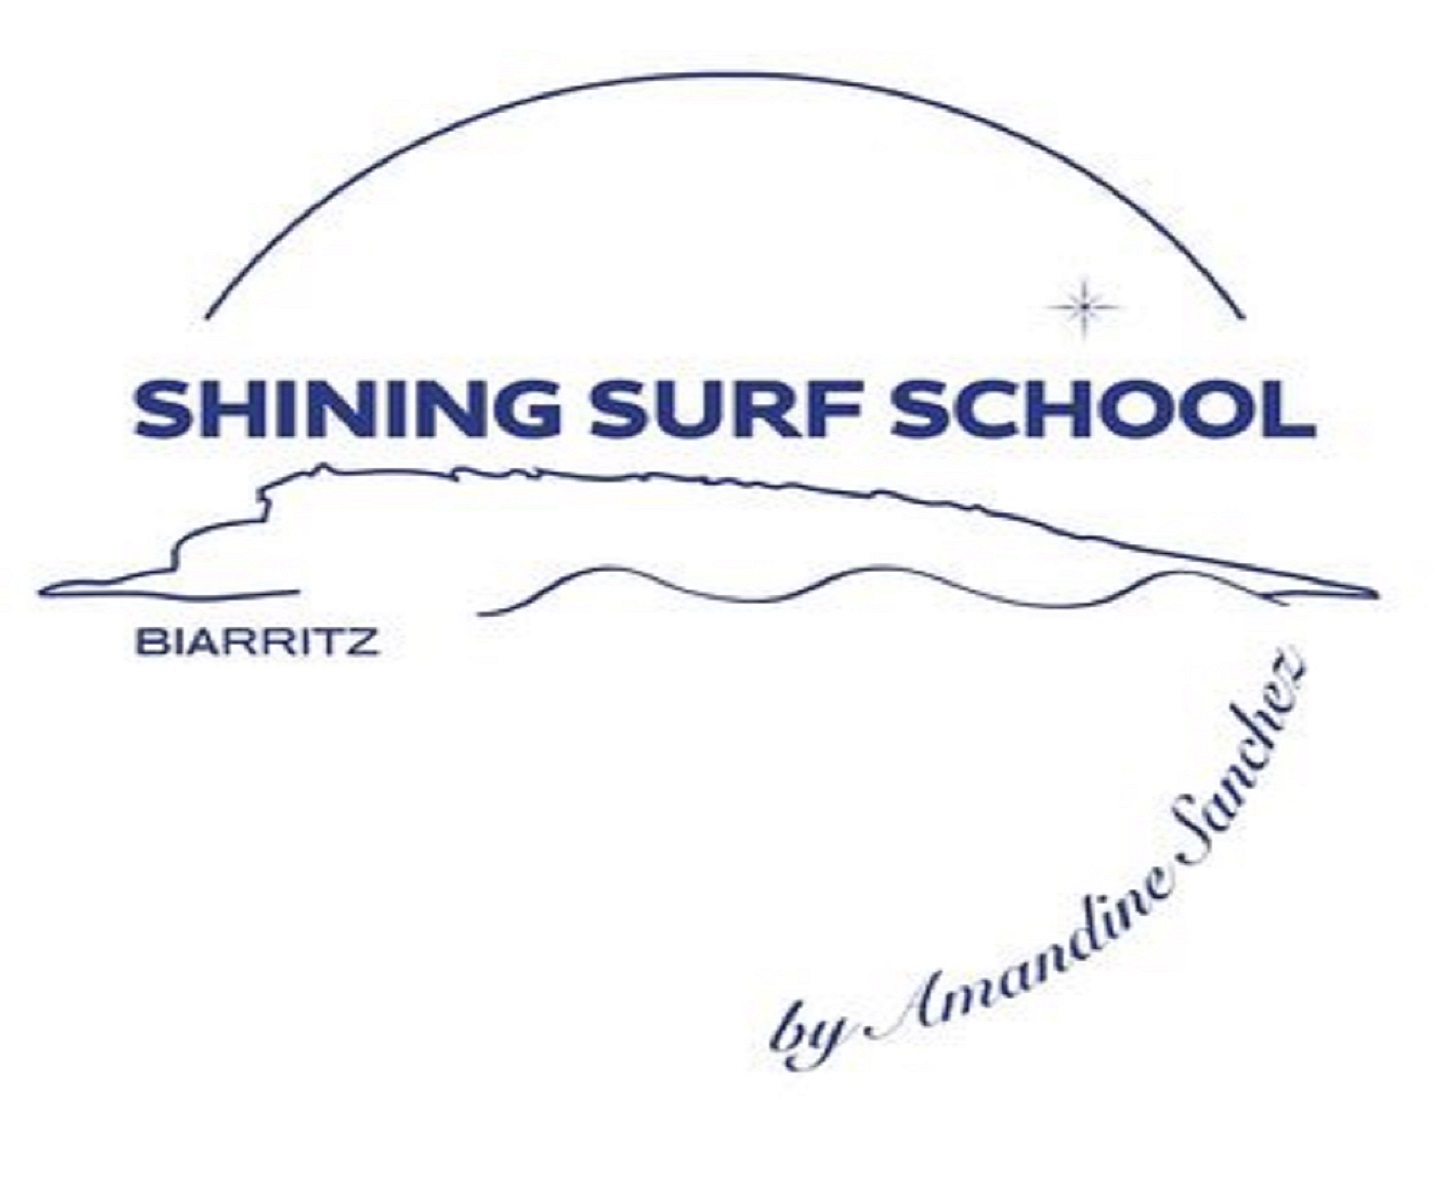 Shining surf school